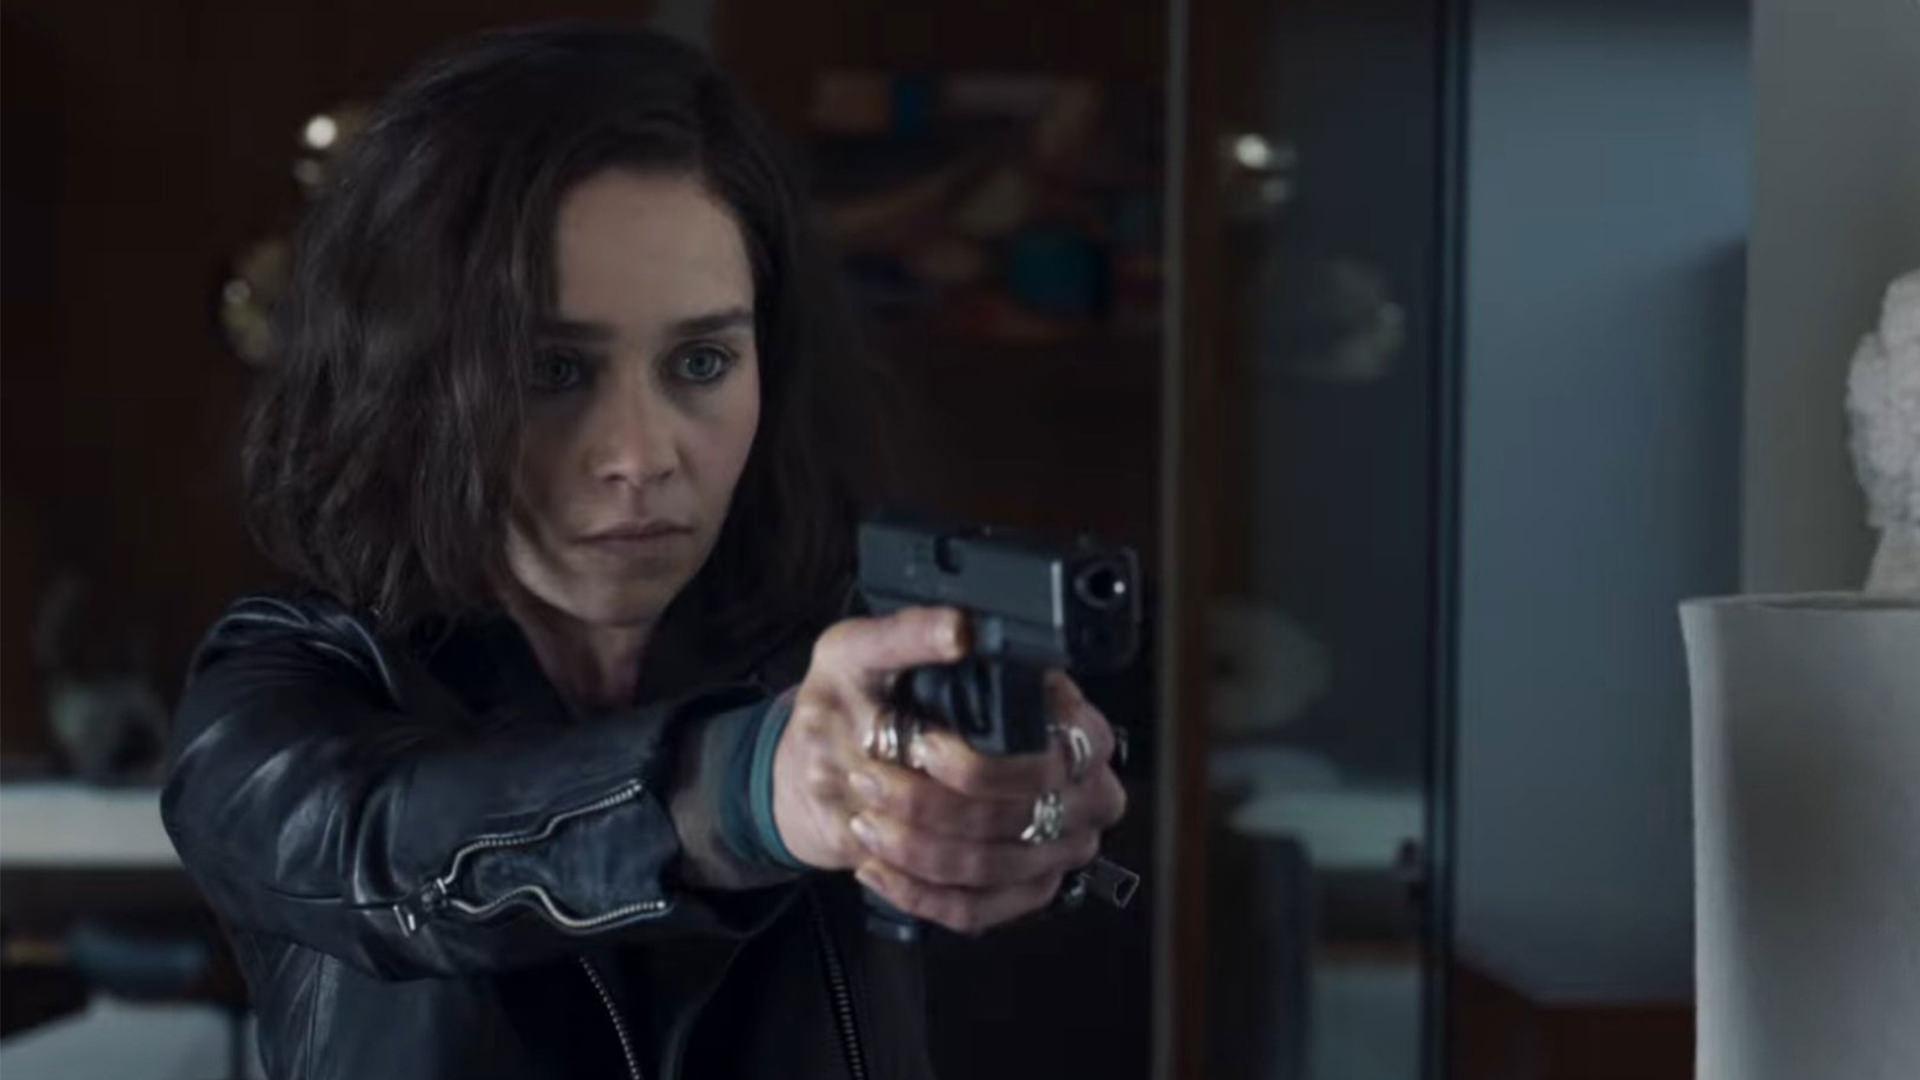 امیلیا کلارک در نقش G’iah به سمت کسی با تفنگ در سریال تهاجم مخفی / Secret Invasion نشانه گرفته است